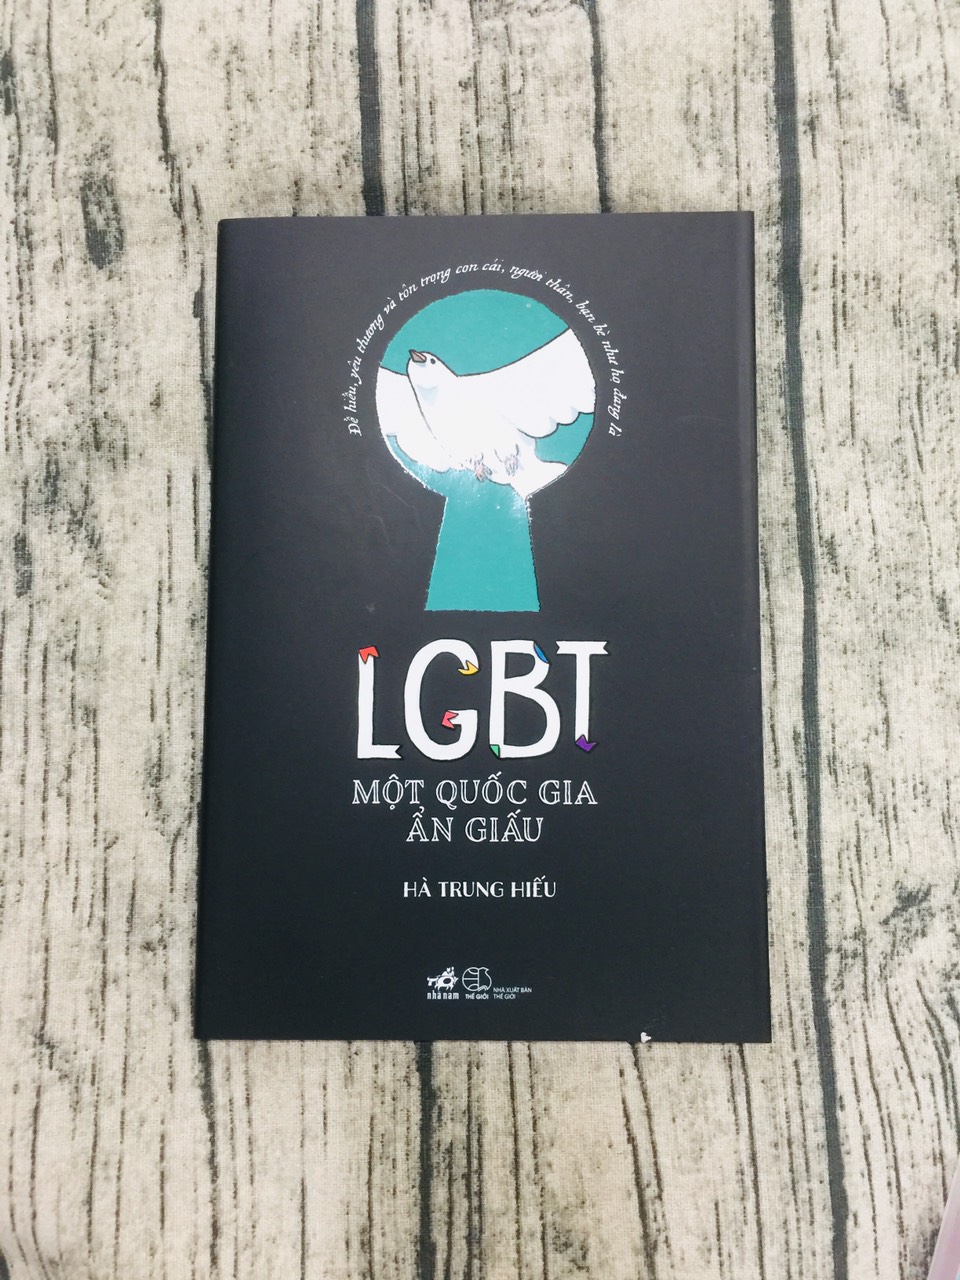 LGBT: Dành cho các bạn yêu thích đồ họa và tình yêu đẹp, hãy cùng xem qua những bức ảnh đầy ý nghĩa về cộng đồng LGBT và những câu chuyện tình yêu đầy đắm say.